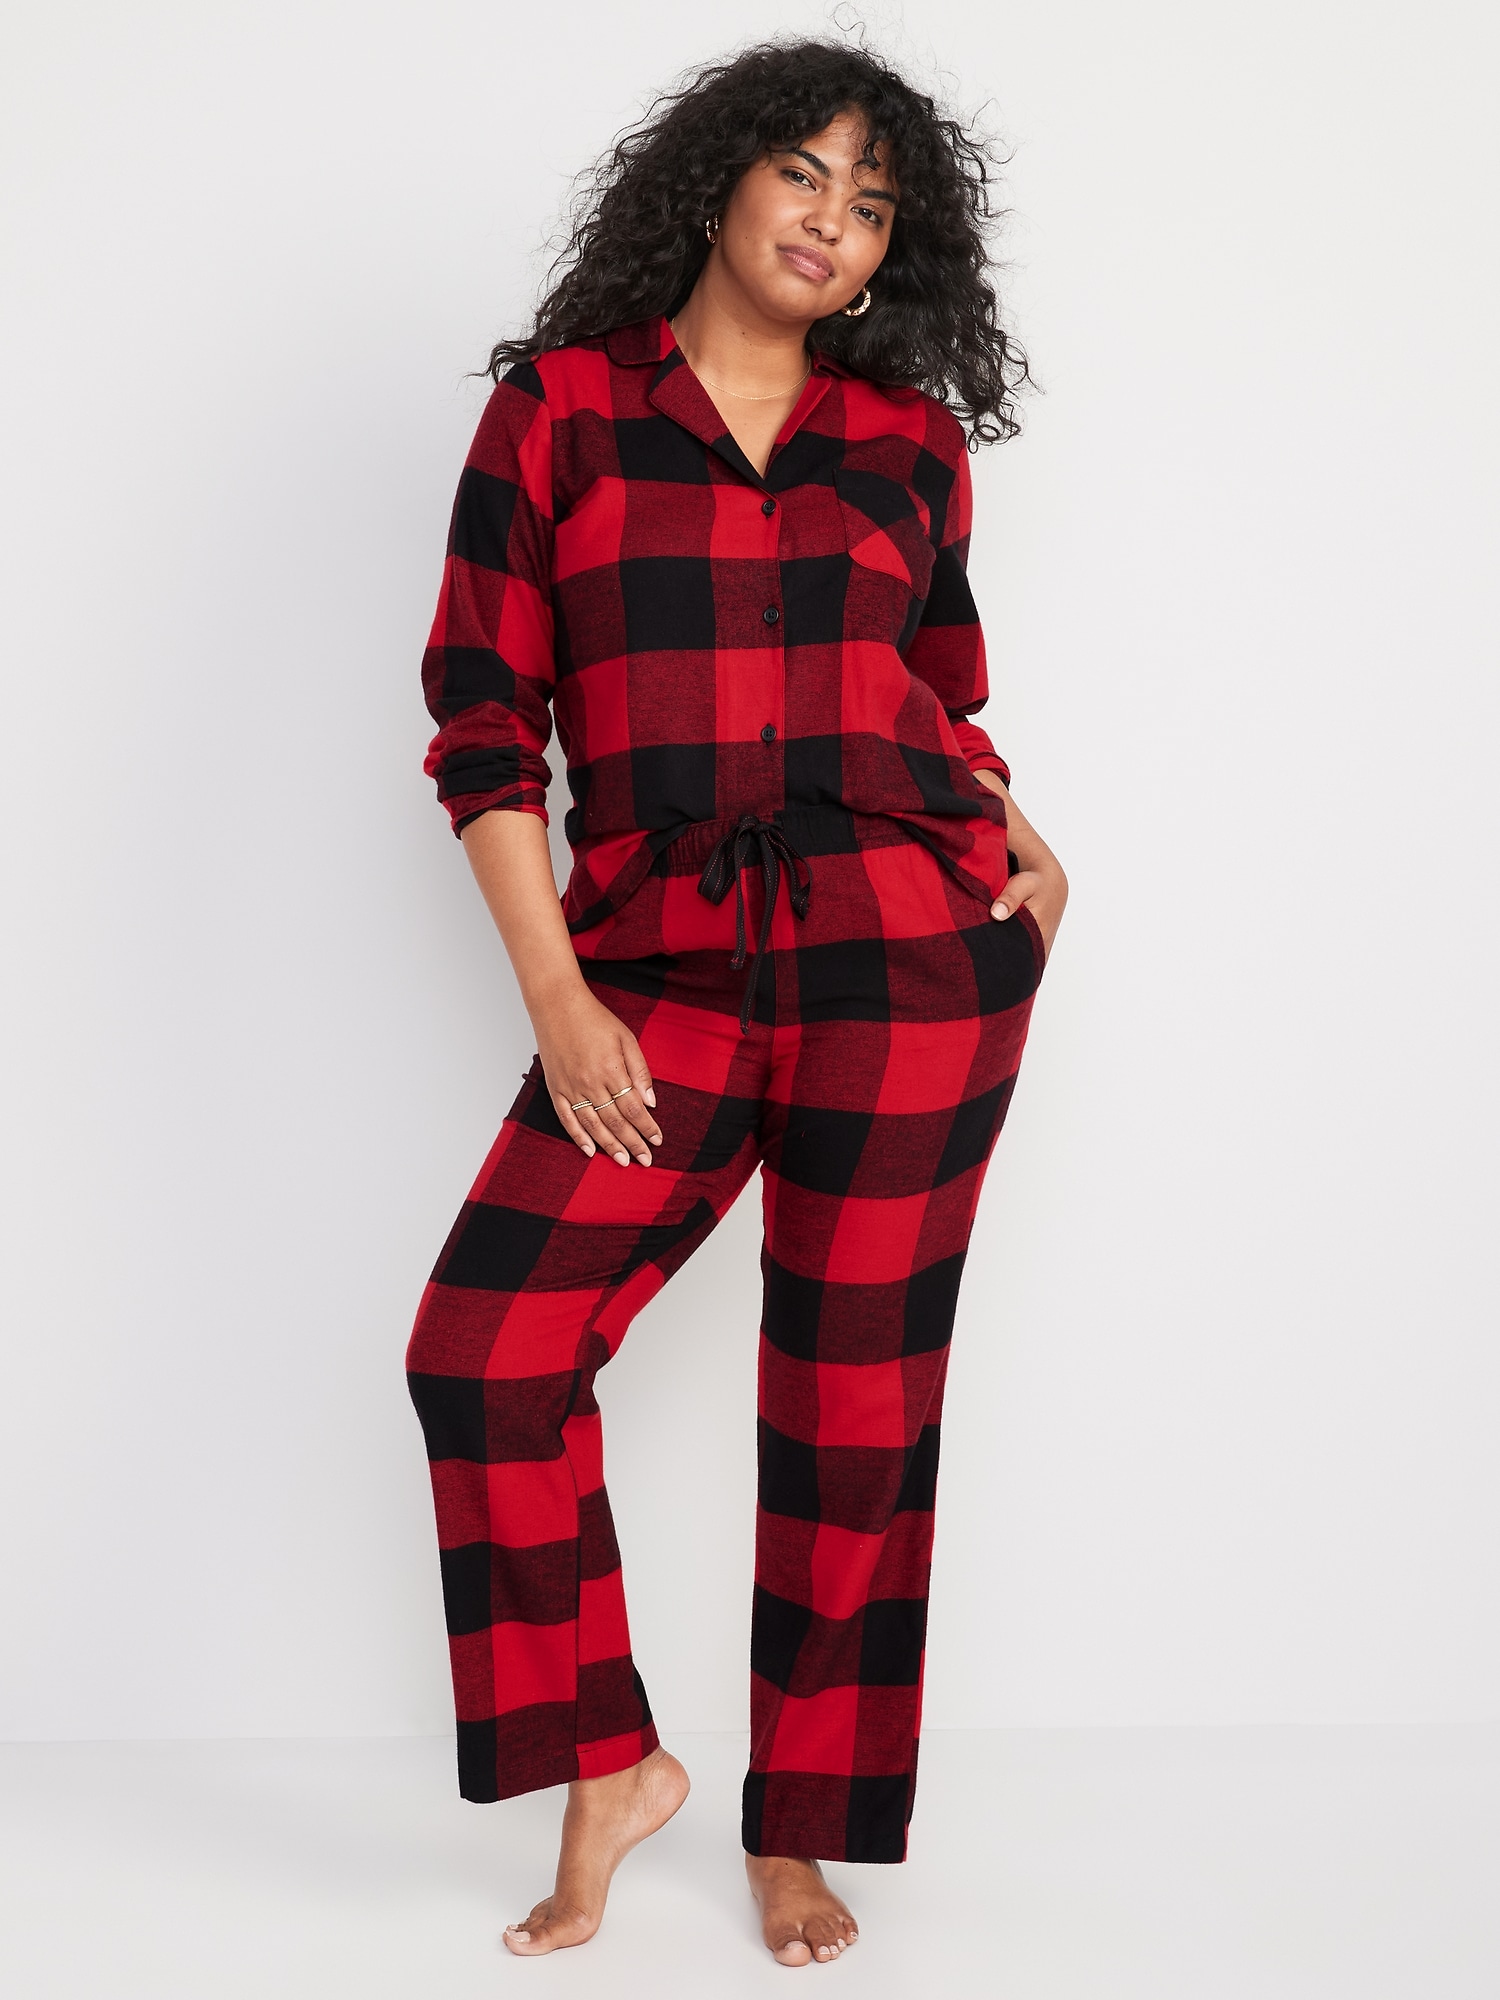 Black Pajamas, Pajama Sets, Pajamas for Women